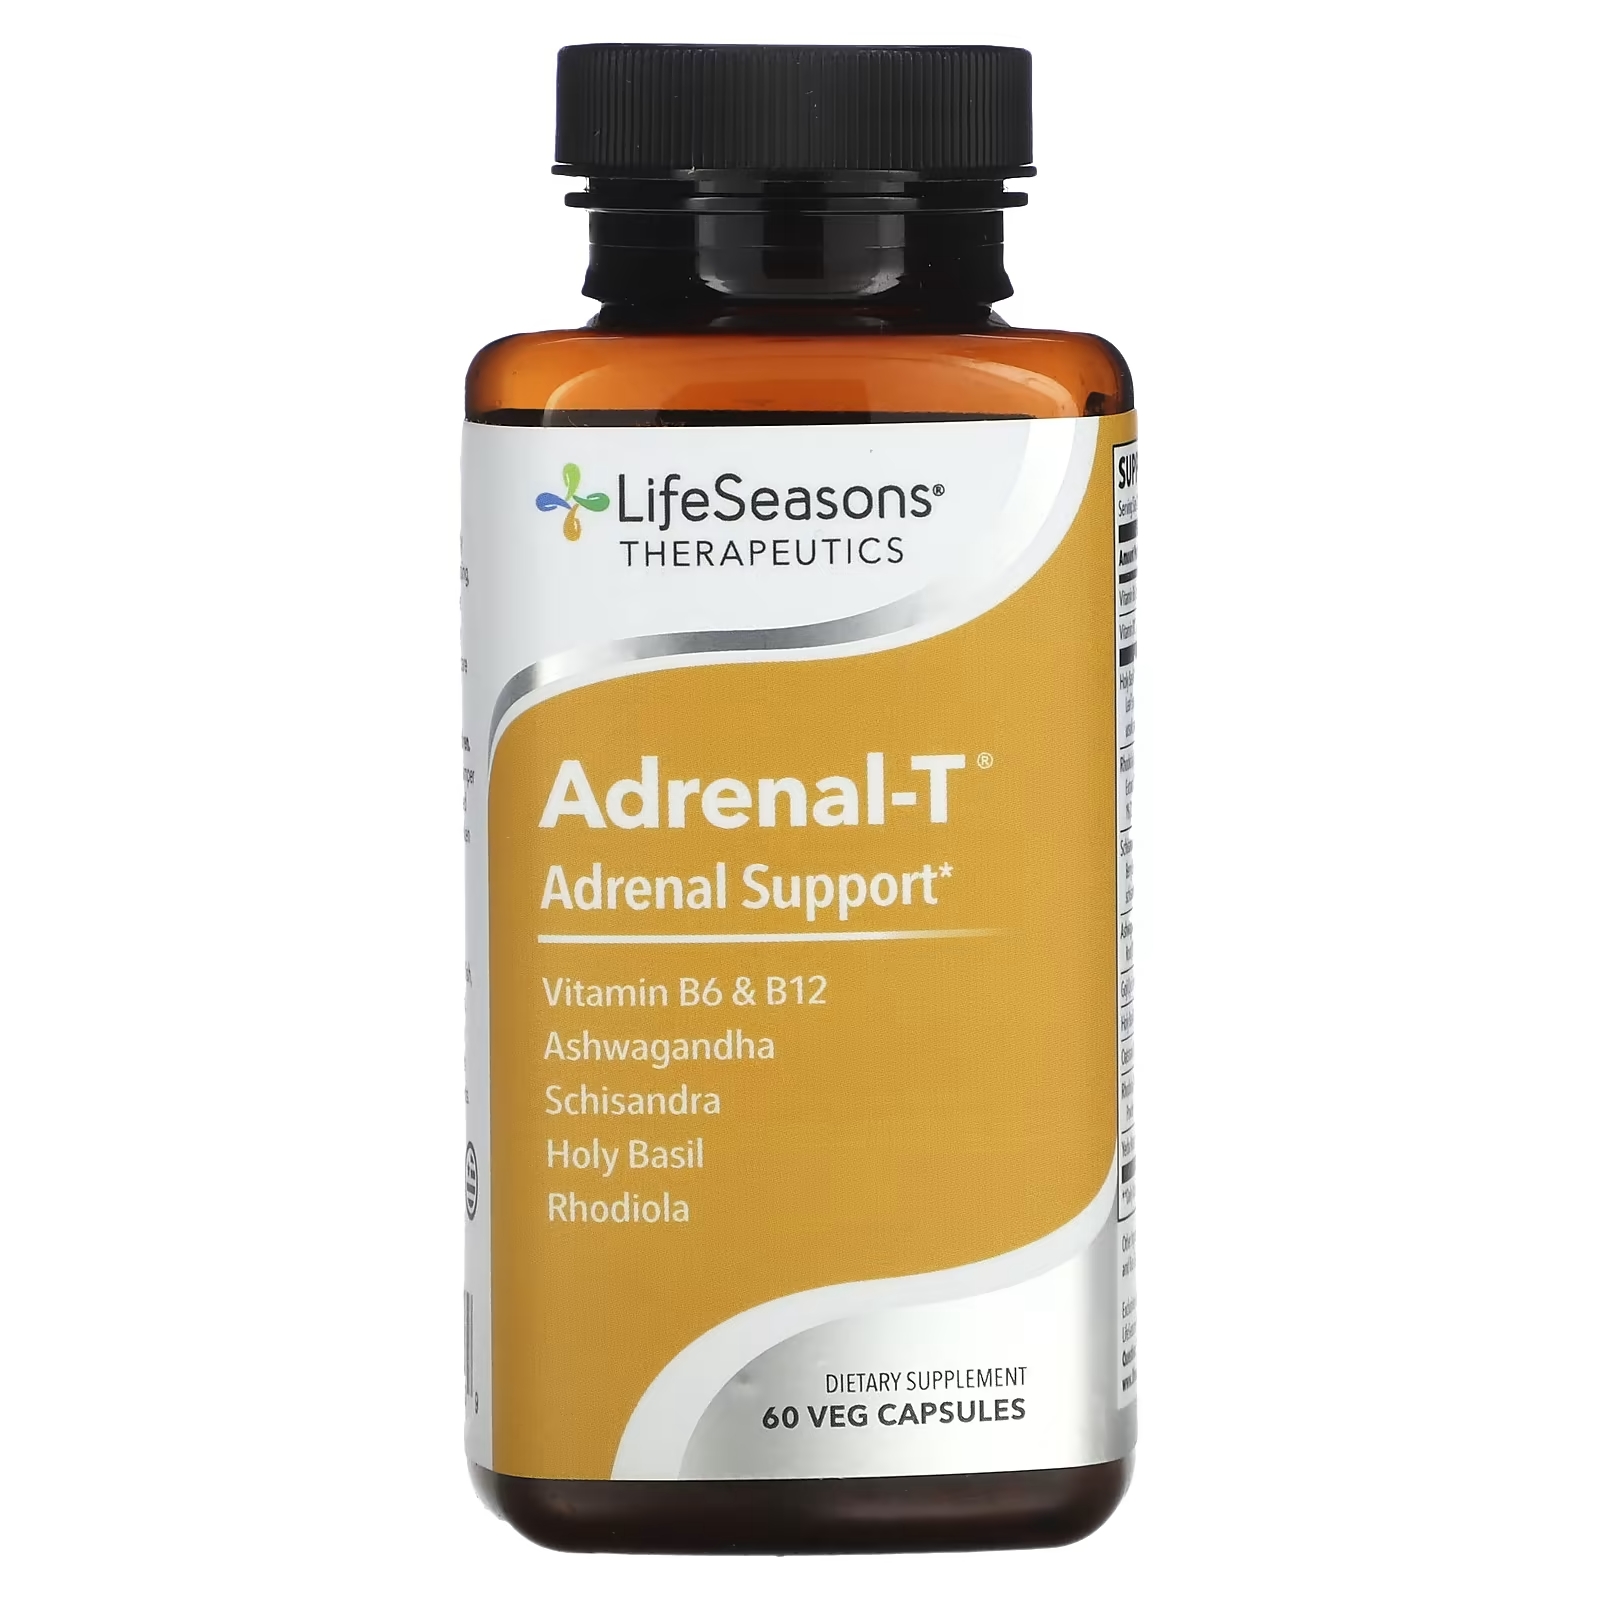 LifeSeasons Adrenal-T адреналиновая поддержка, 60 вегетарианских капсул фотографии